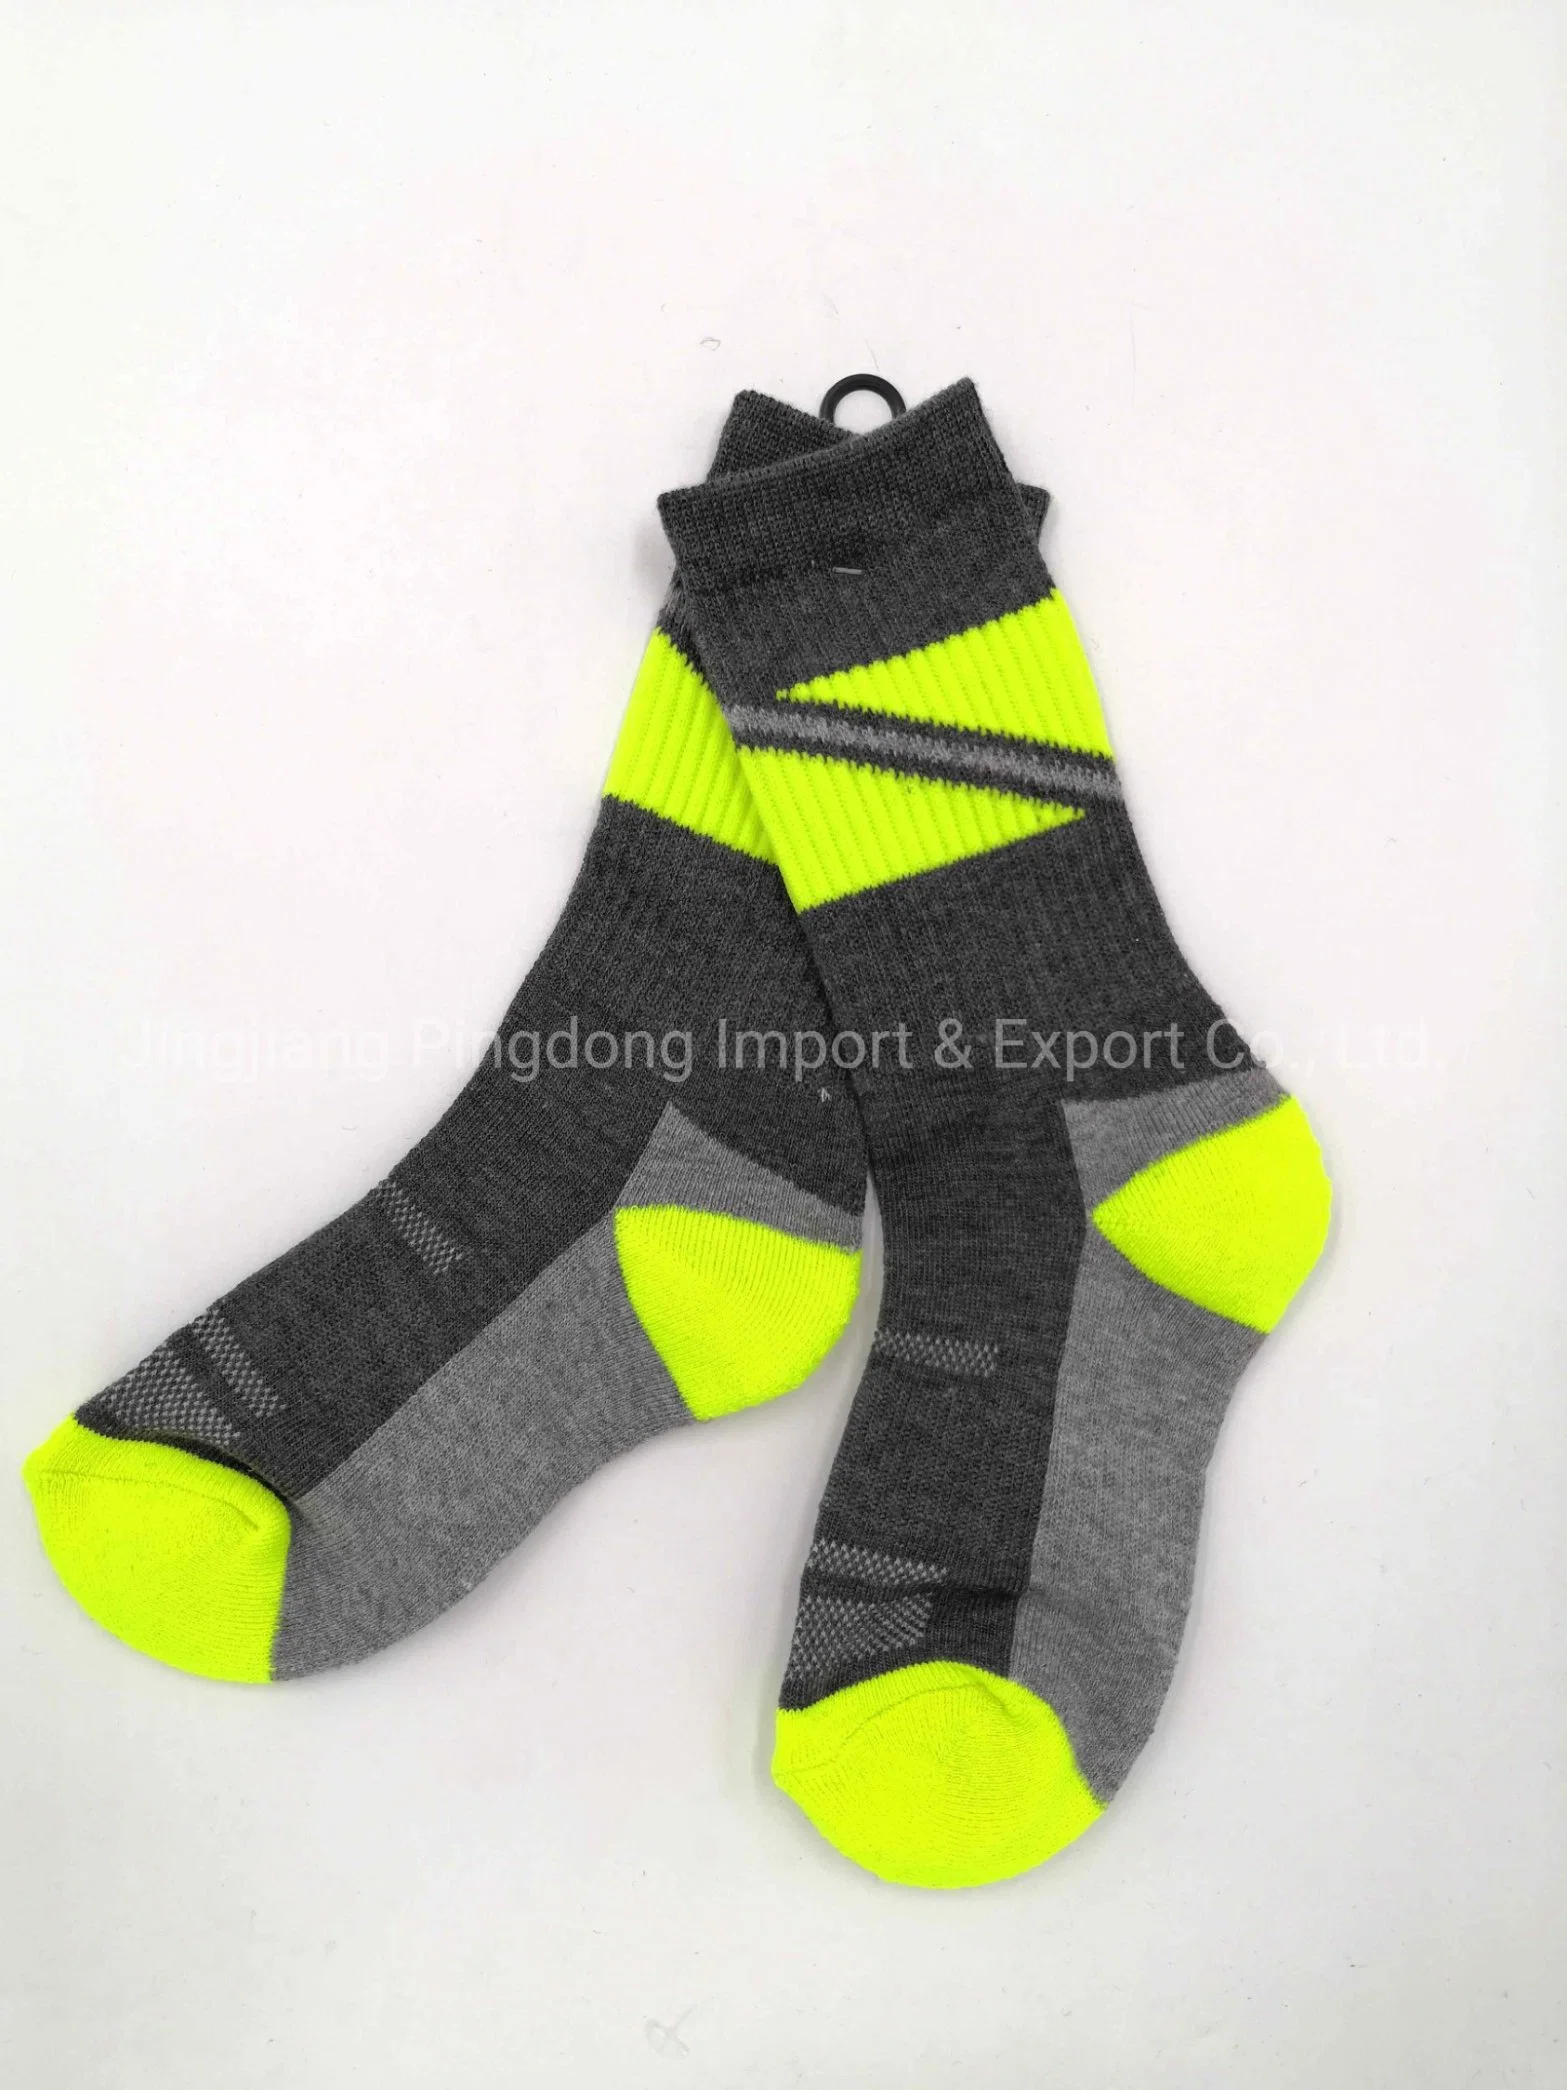 Comercio al por mayor de fútbol del muchacho deporte calcetines calcetines calcetines de algodón suave transpirable